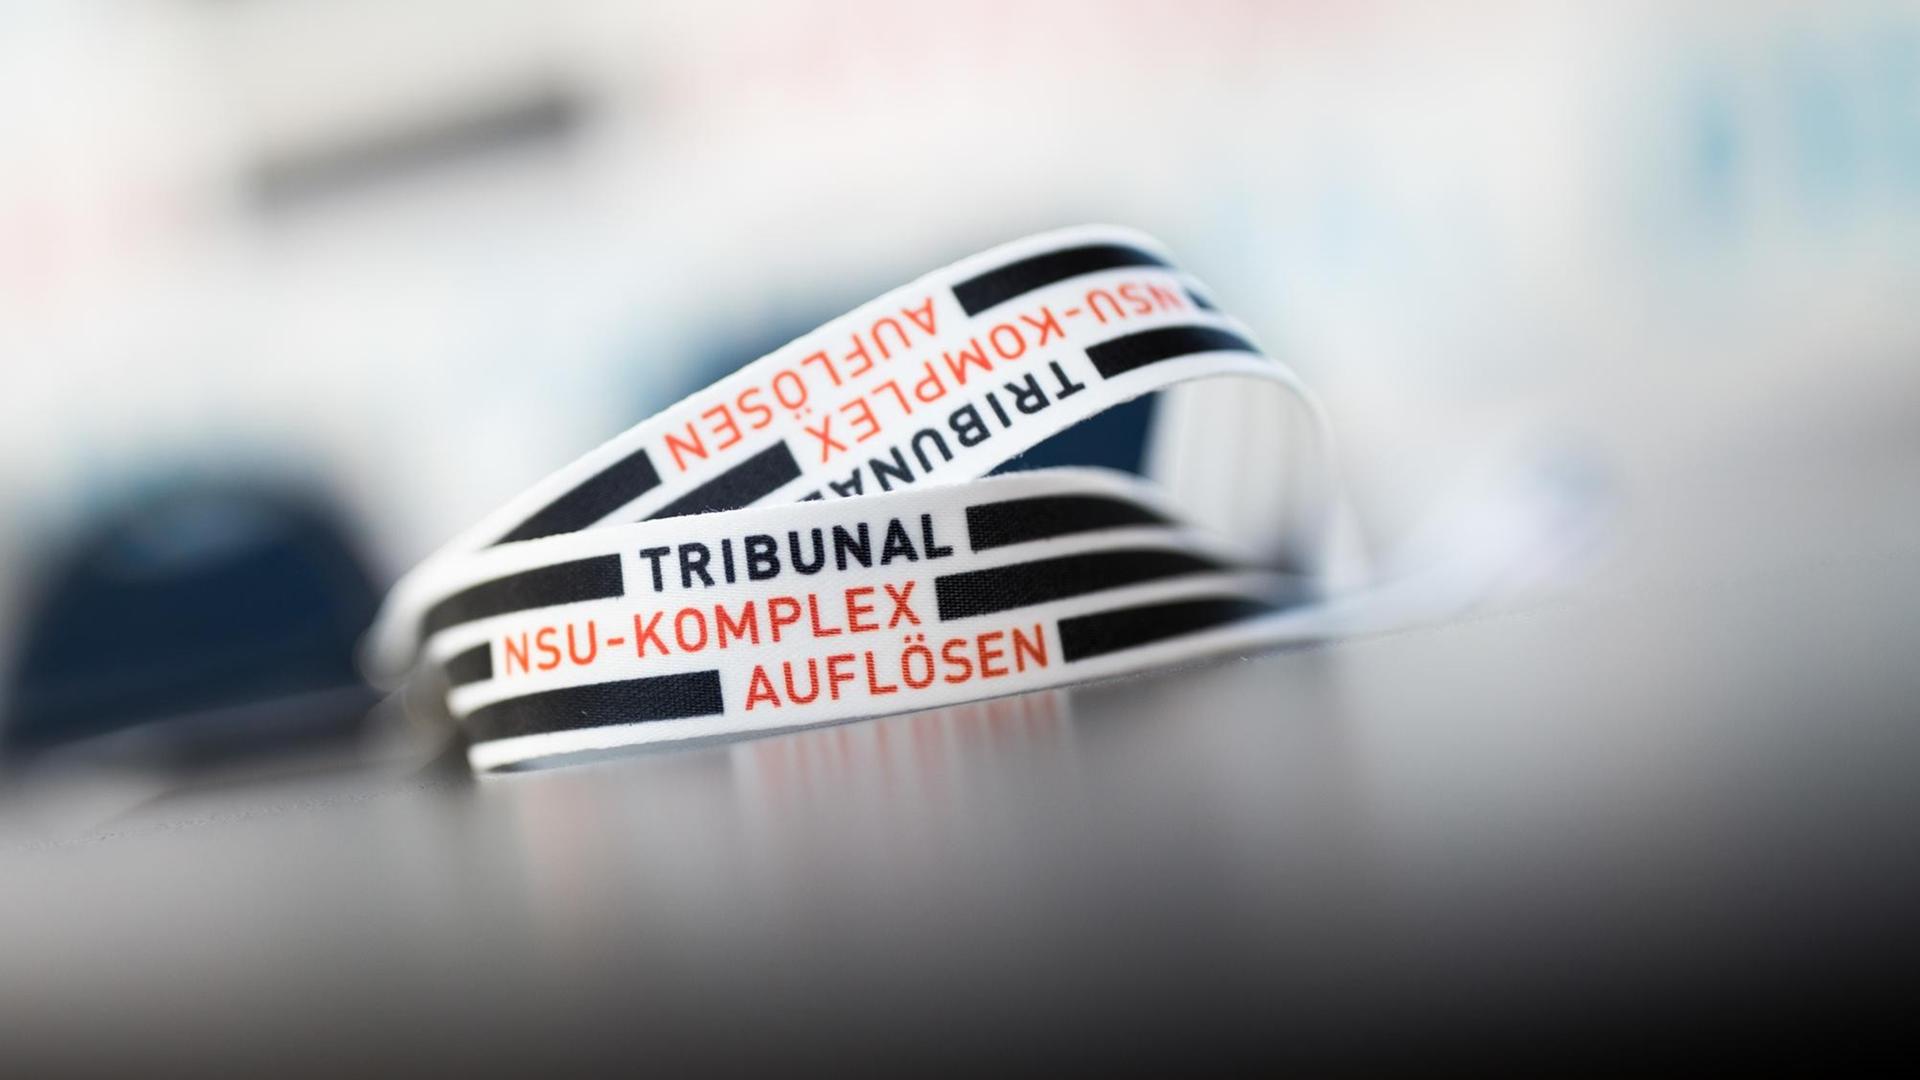 Ein Band mit der Aufschrift "Tribunal NSU-Komplex auflösen" liegt am 17.05.2017 bei einer Pressekonferenz in Köln auf einem Tisch. In einem öffentlichen Tribunal sollen die Täter benannt werden, die im NSU-Prozess nicht auf der Anklagebank sitzen. Das Projekt, dass am 17.05. am Schauspiel Köln beginnt, erstreckt sich über fünf Tage.